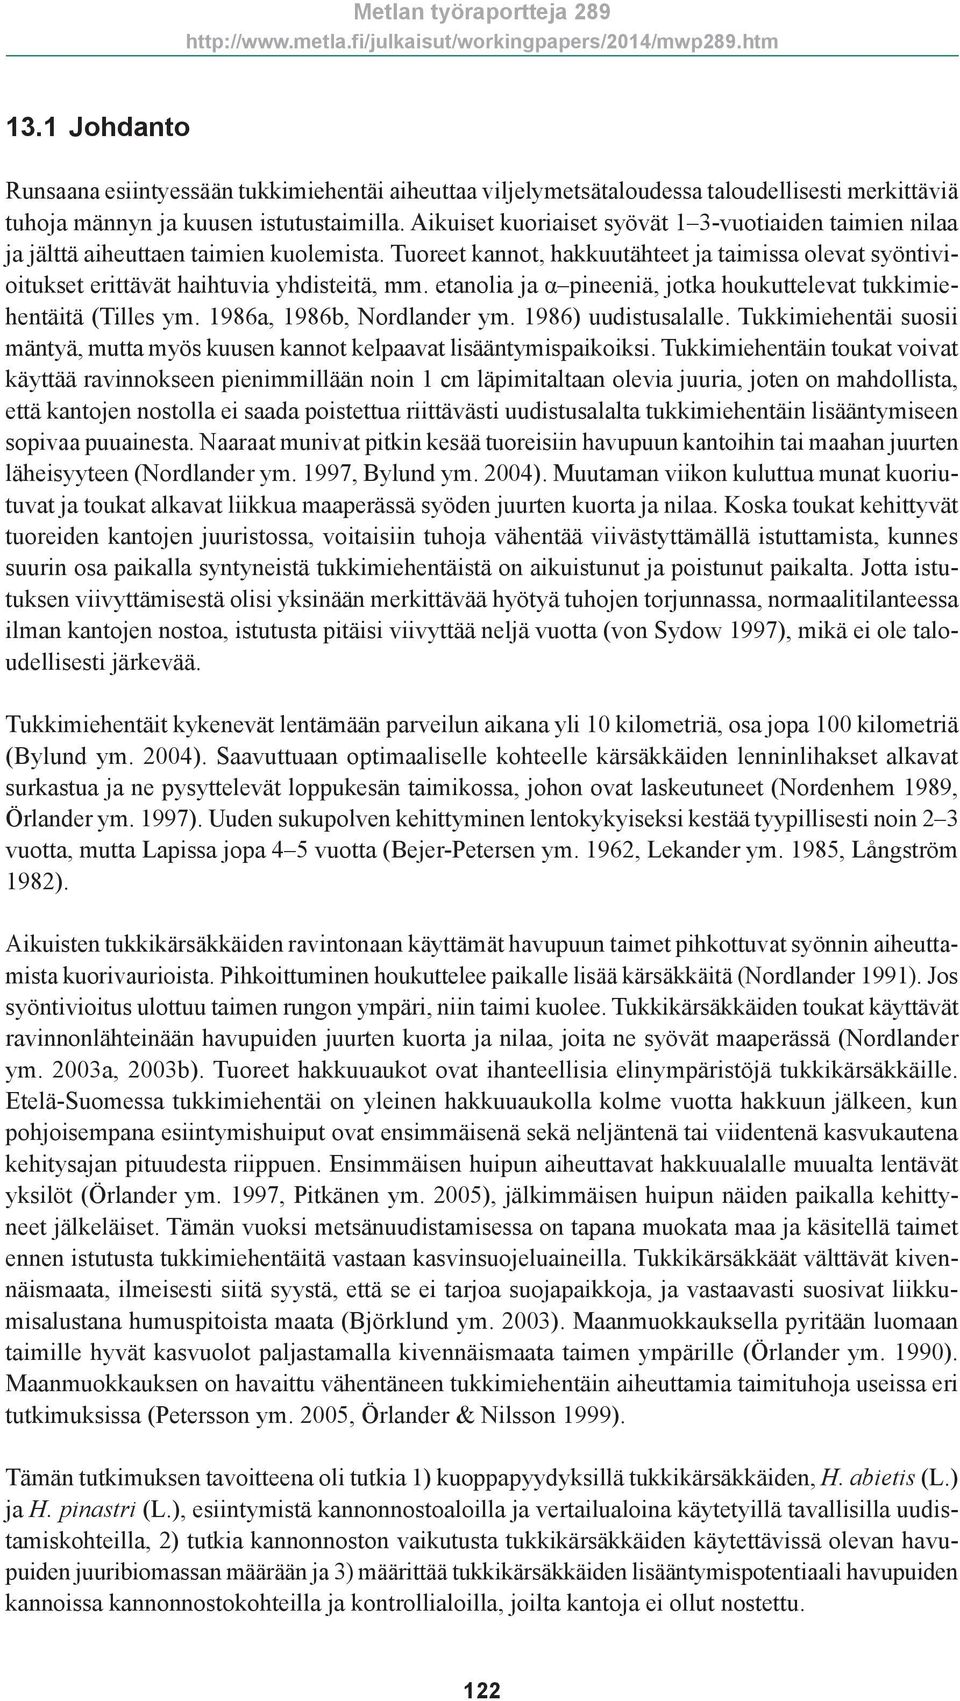 etanolia ja α pineeniä, jotka houkuttelevat tukkimiehentäitä (Tilles ym. 1986a, 1986b, Nordlander ym. 1986) uudistusalalle.